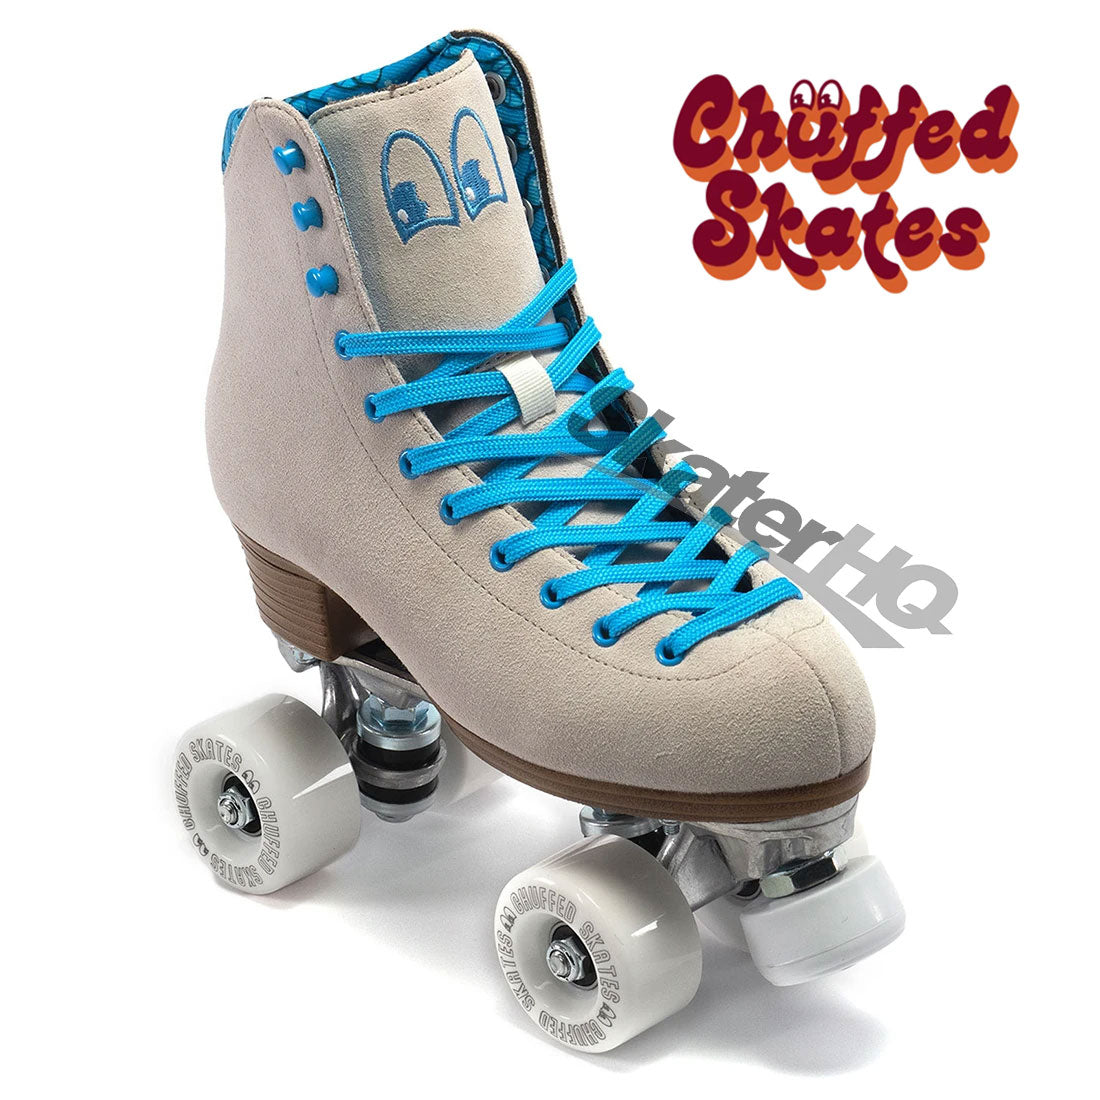 Chuffed Crew Bowzer Grey 6US Roller Skates